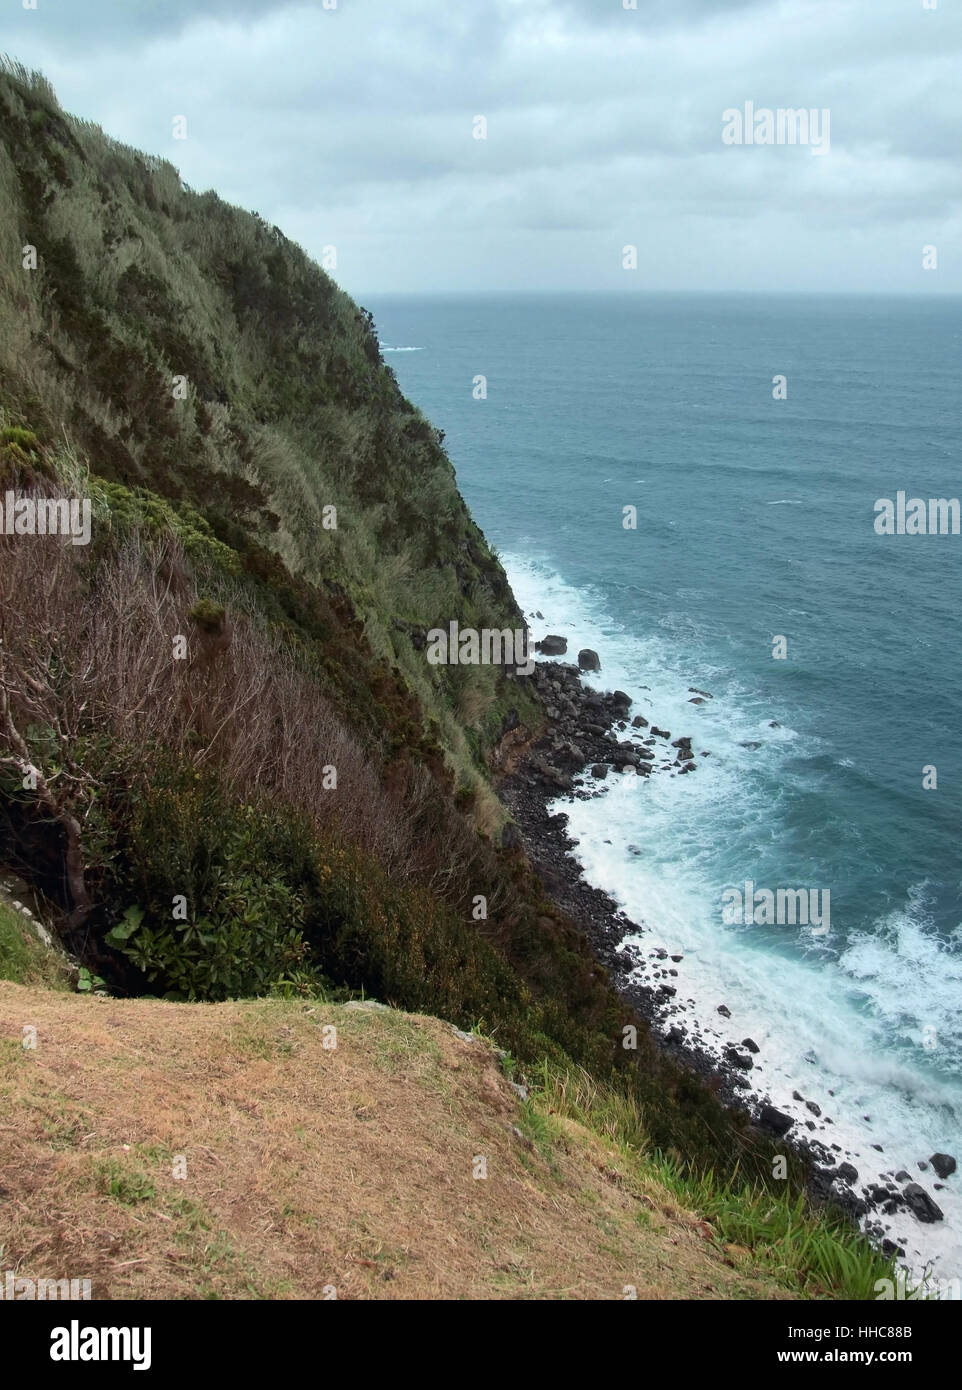 Paysages côtières rocheuses à l'île de São Miguel, la plus grande île de l'archipel des Açores, un groupe d'îles volcanique situé au milieu de l'océan Atlantique Nord (Portugal) Banque D'Images